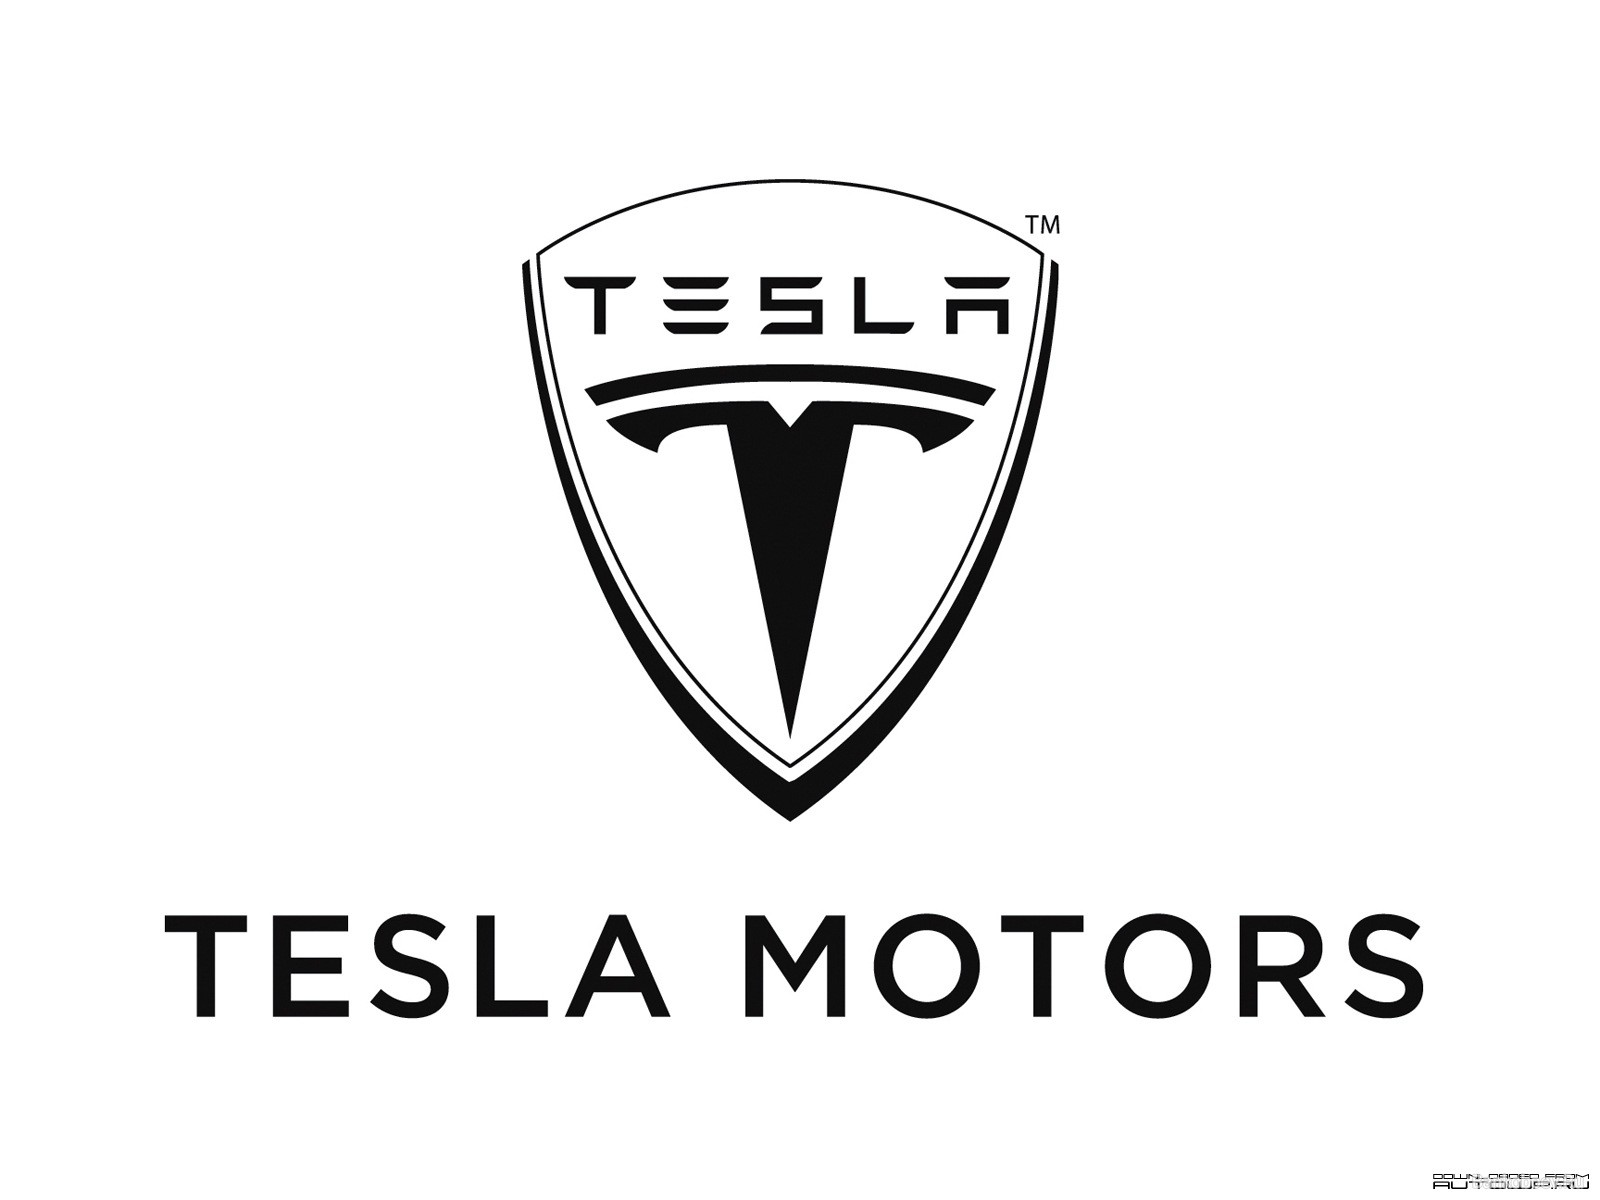 Tesla Constructeur Automobiles de voitures électriques